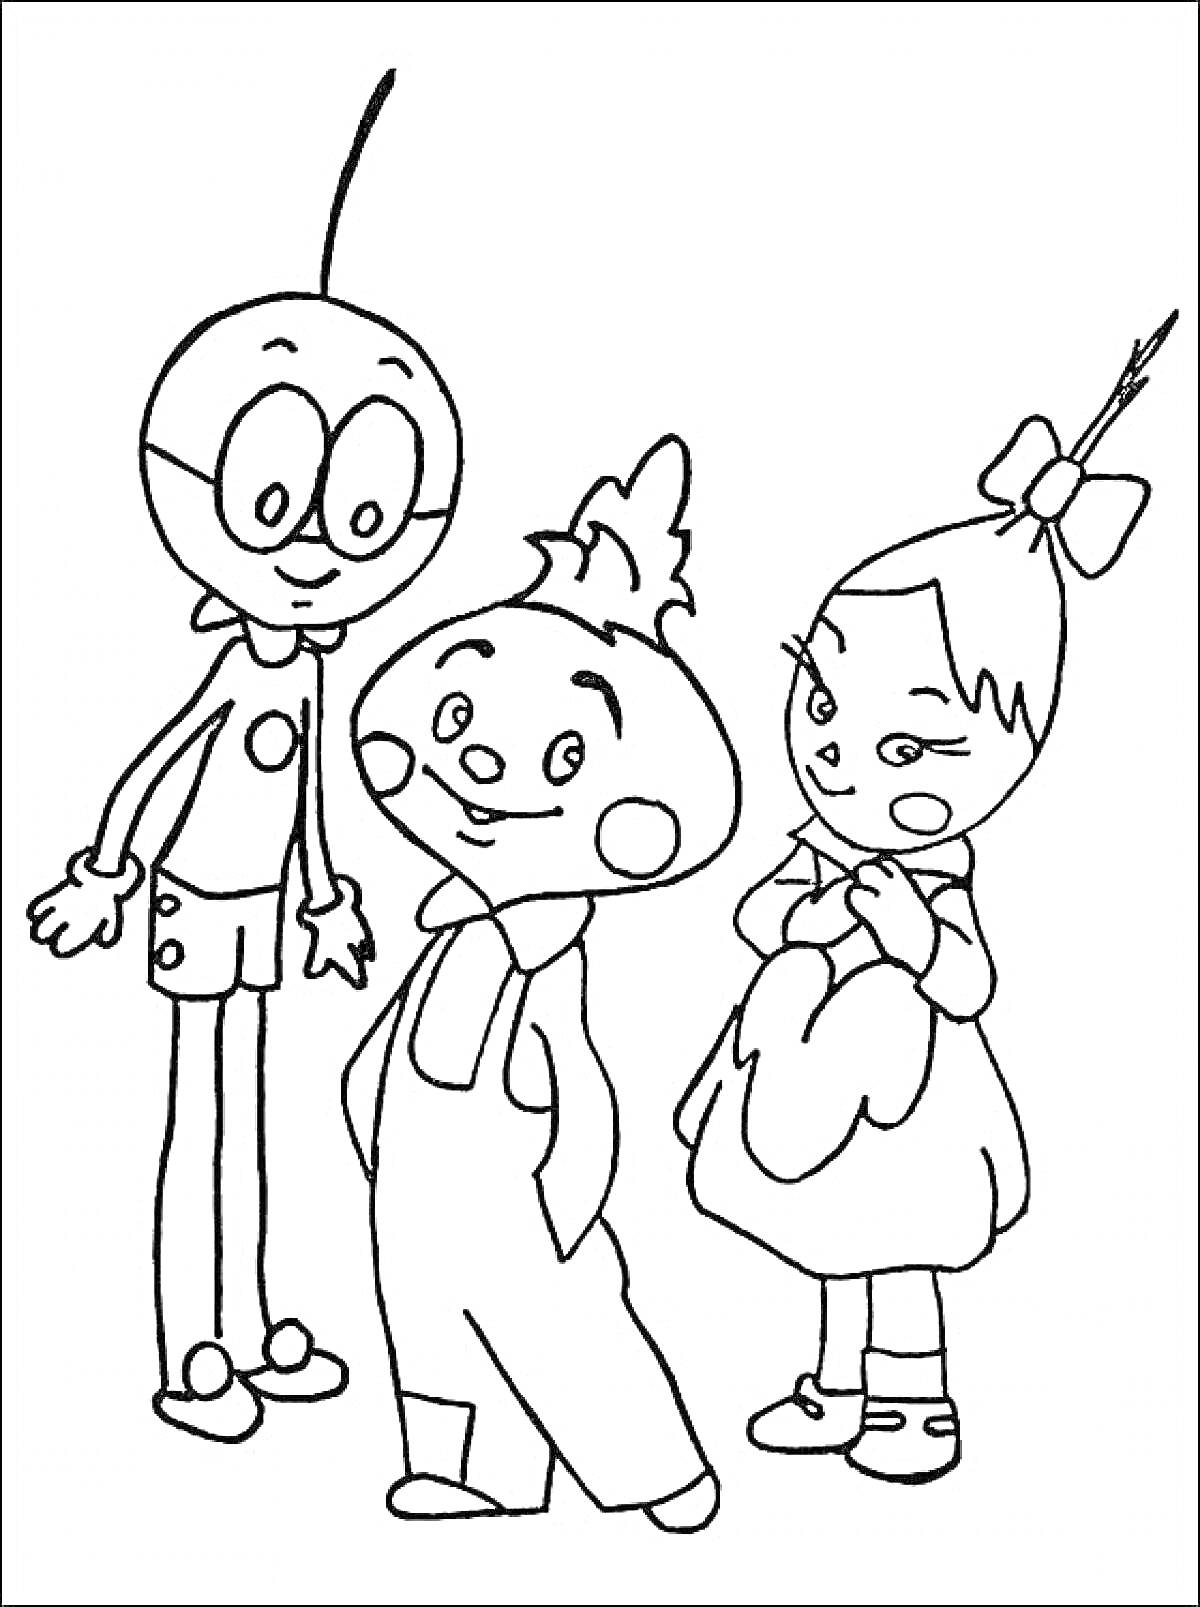 Раскраска Чиполлино и друзья - Чиполлино в комбинезоне, мальчик с очками и девочка с бантом